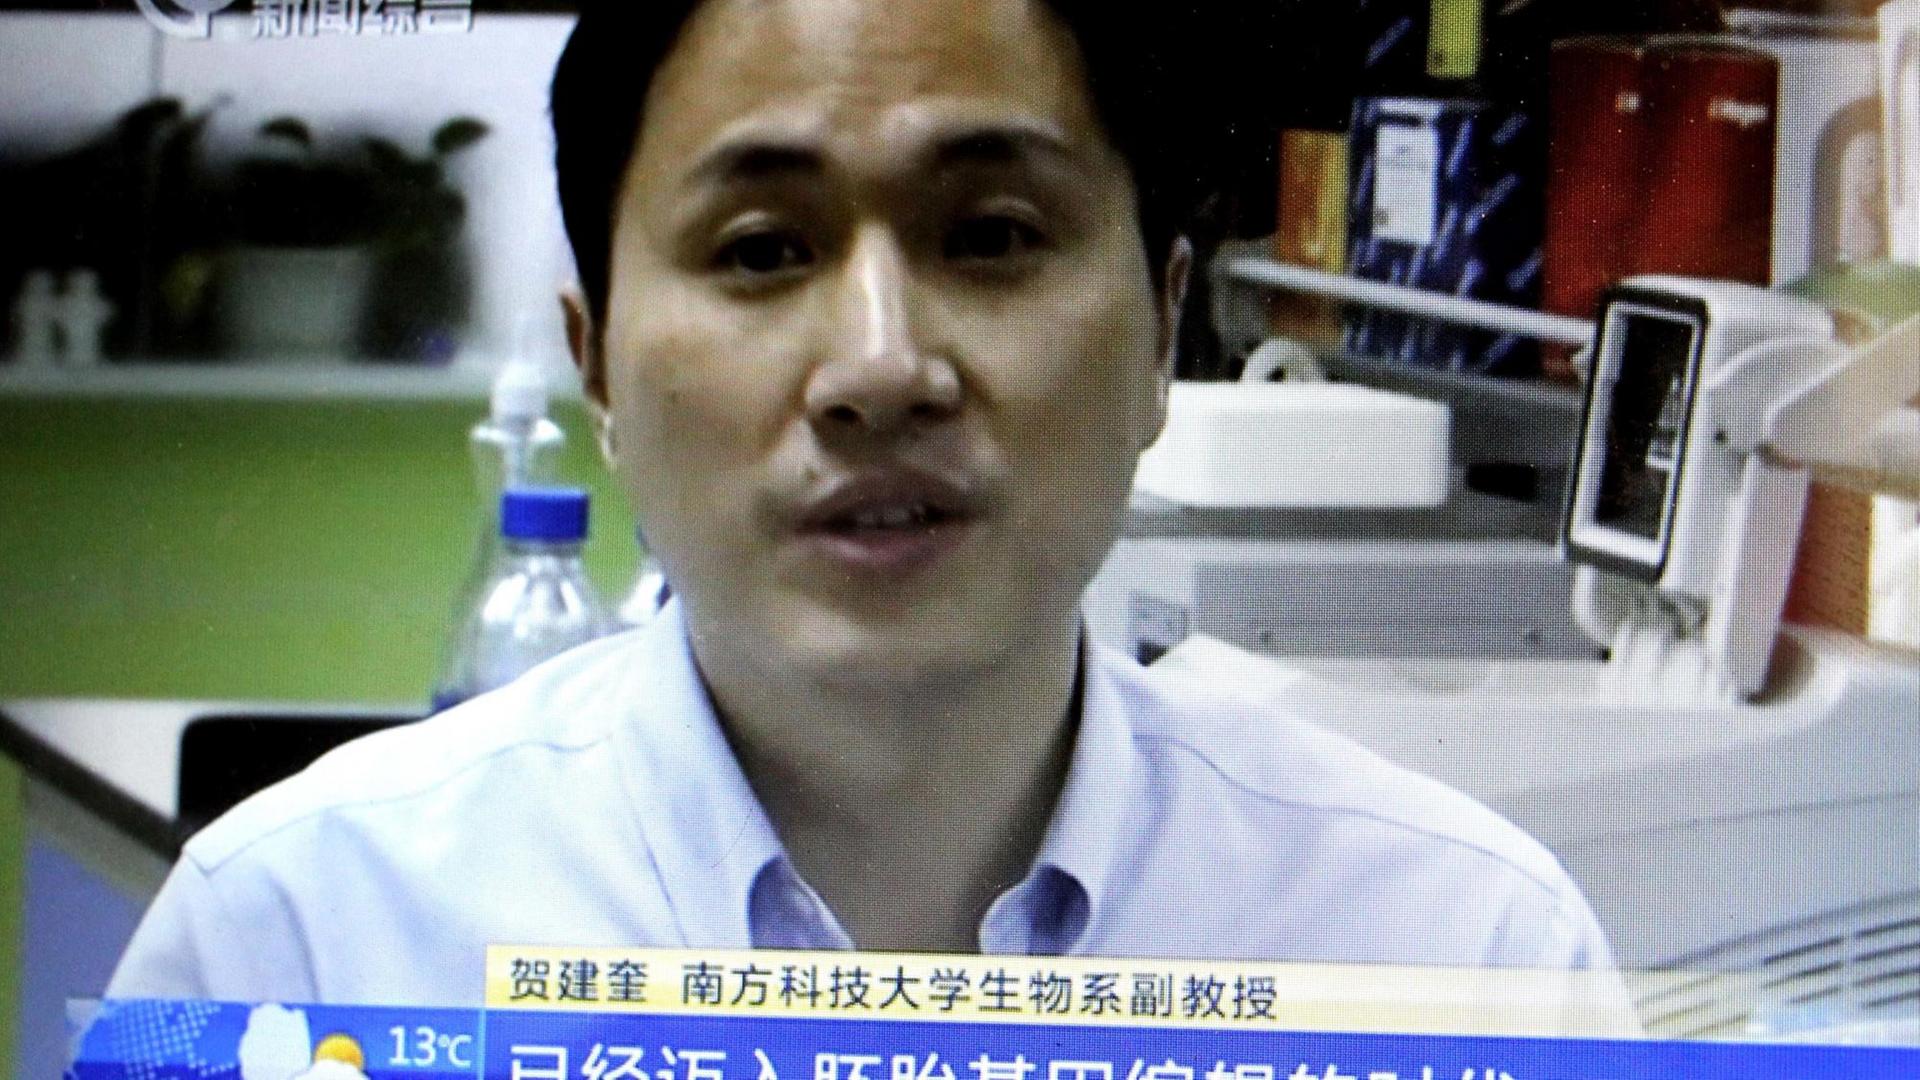 He Jiankui, Associate Professor im Fachbereich Biologie an der Southern University of Science and Technology in Shenzhen City (China), während eines TV-Interviews. Jiankui leitete ein Projekt, das die ersten genetisch veränderten Babys hervorbrachte - die Zwillinge Nana und Lulu sollen gegen HIV immun sein.